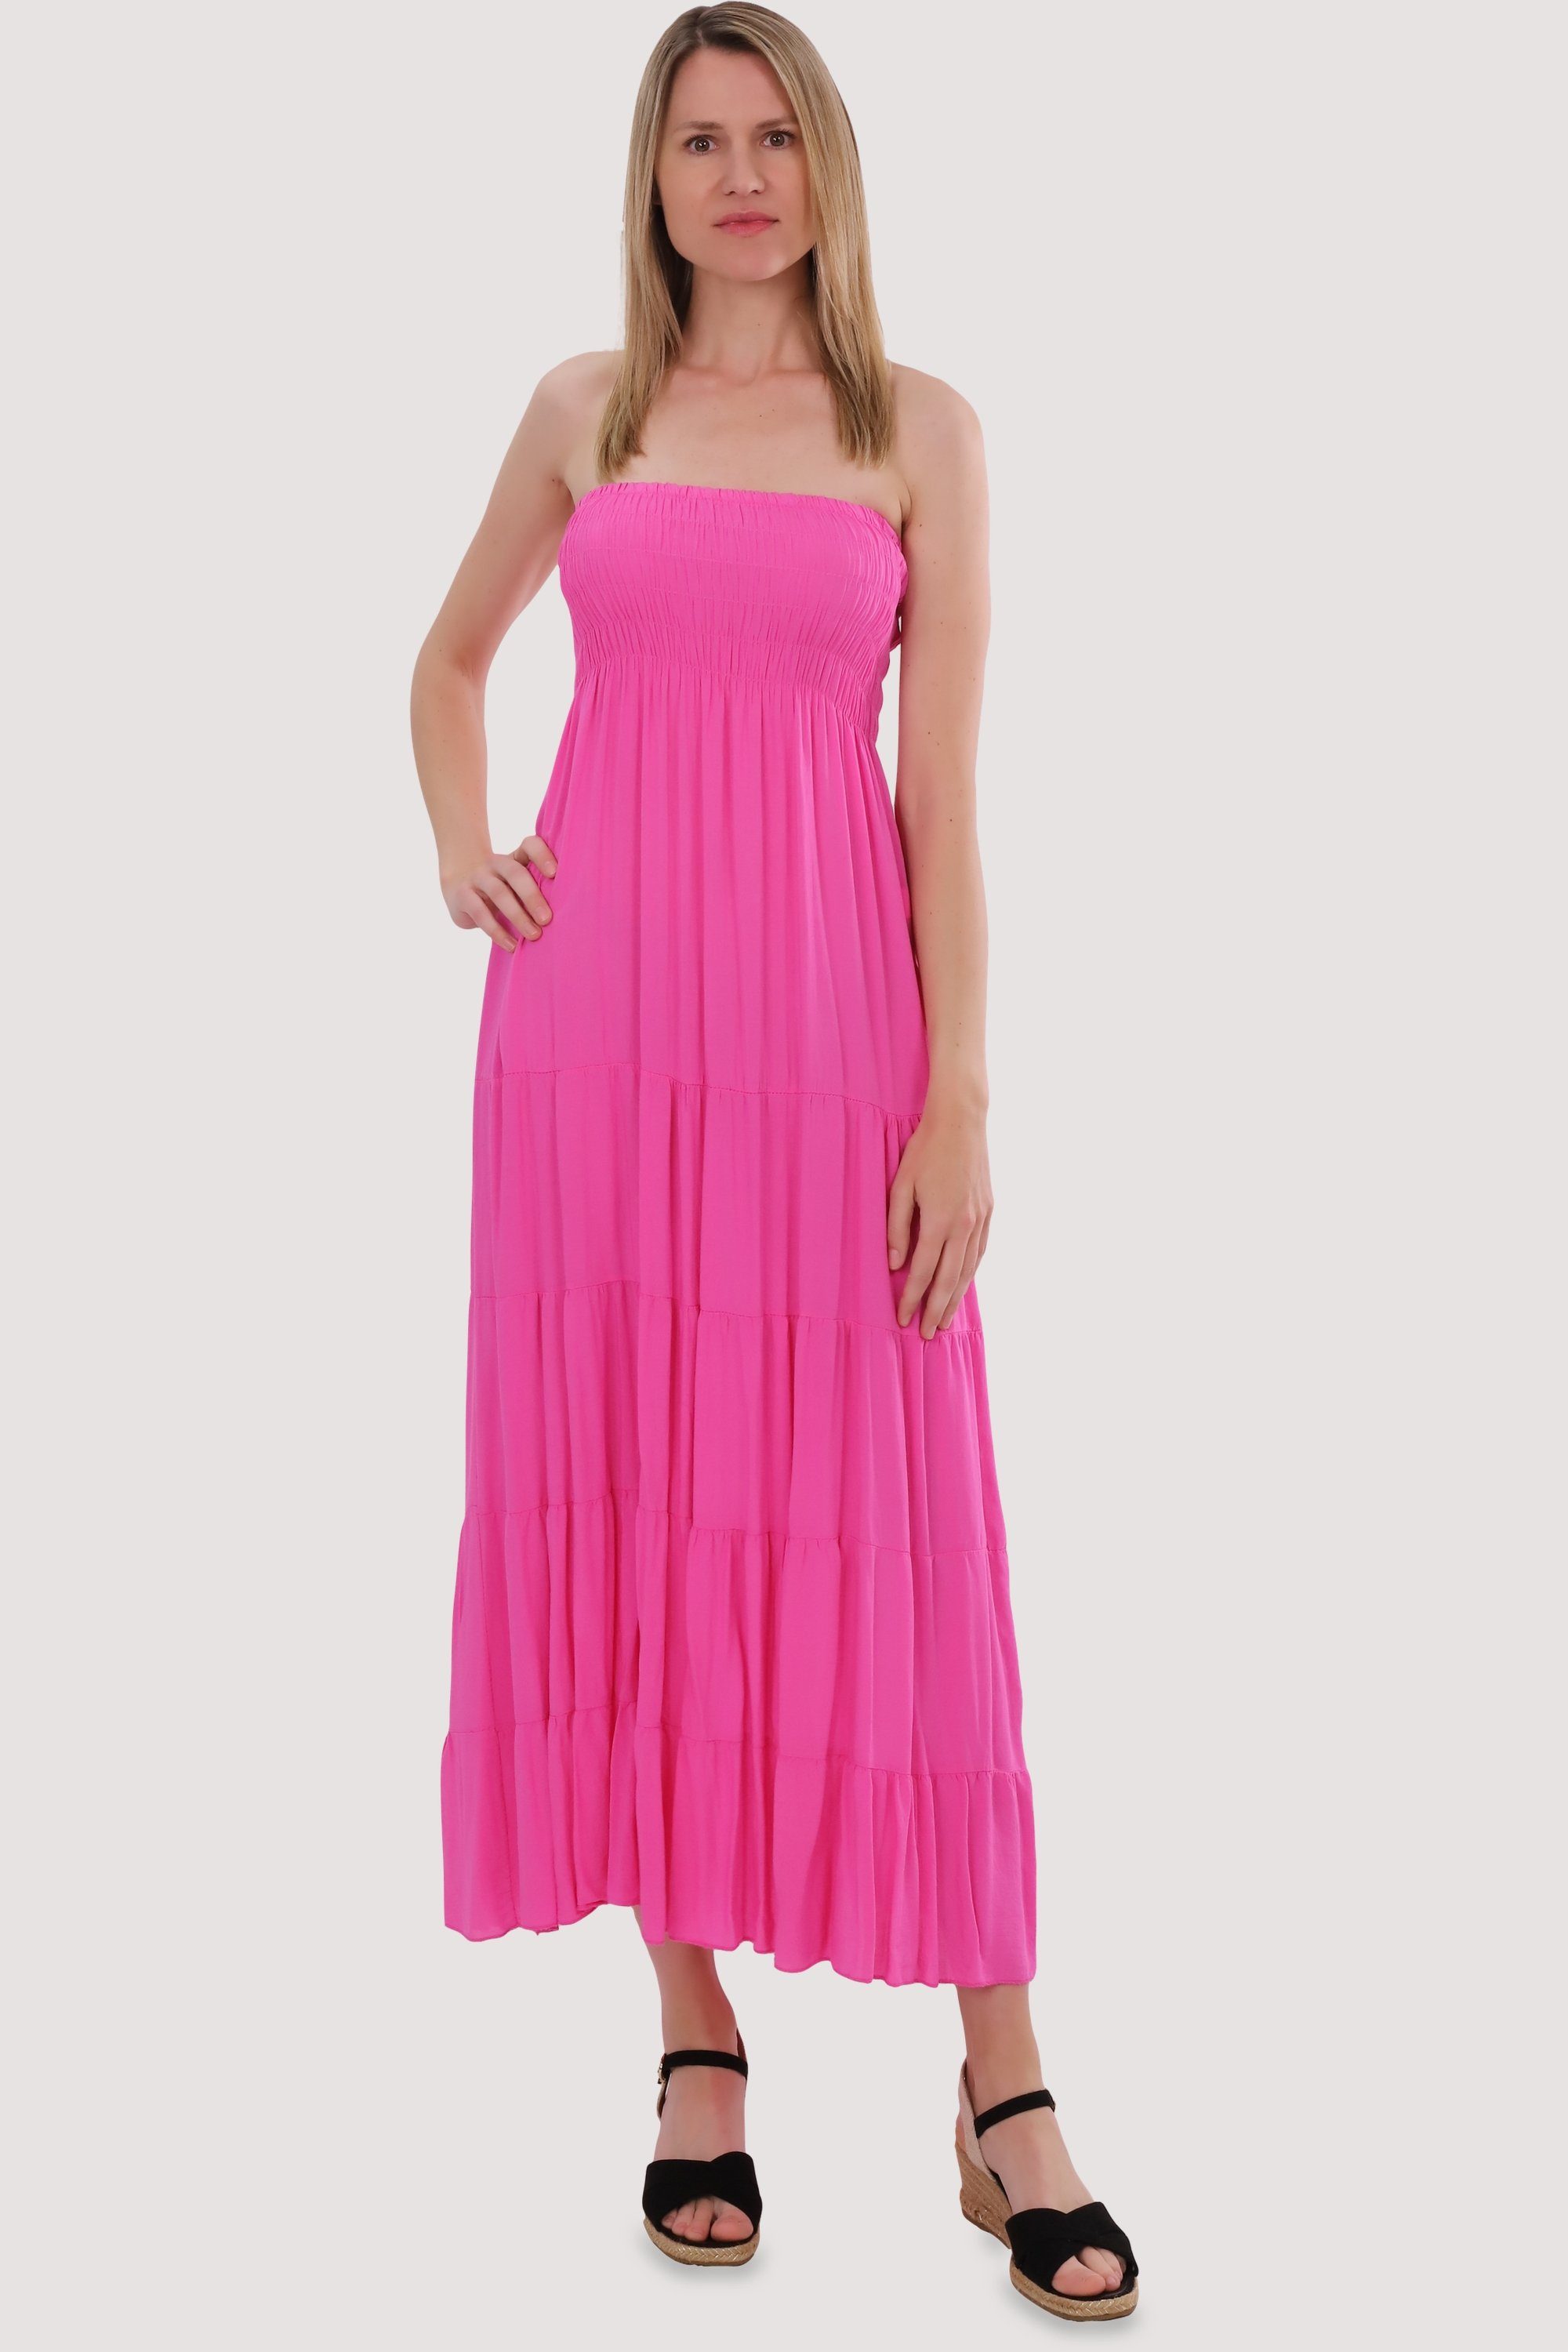 malito more than fashion Bandeaukleid Sommerkleid figurumspielendes Einheitsgröße rosa Strandkleid 4635